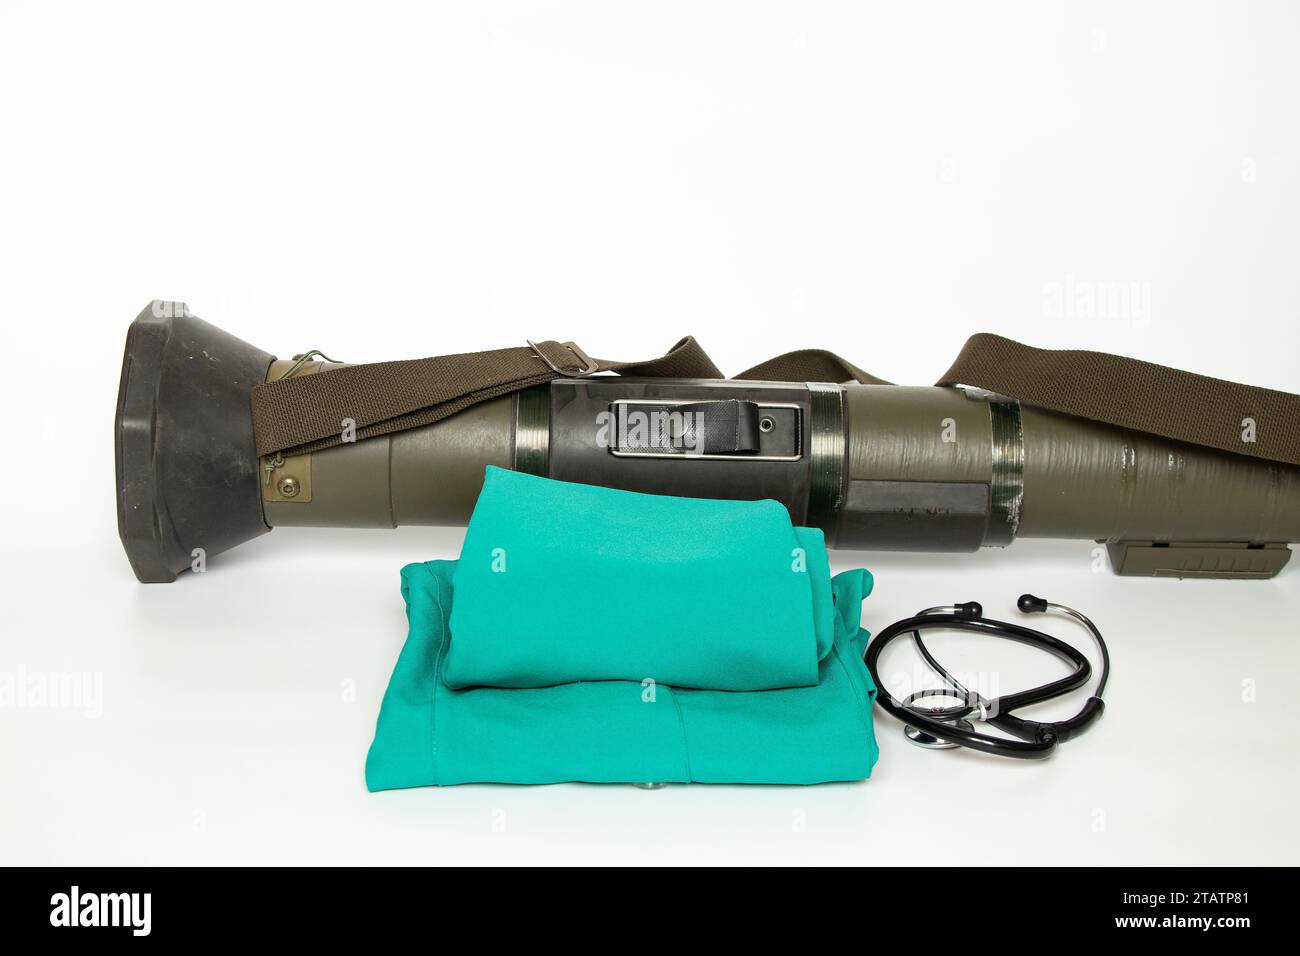 Un lanciagranate anticarro, usato nella guerra in Ucraina, su sfondo bianco e un'uniforme medica e uno stetoscopio si trovano accanto ad esso, anti-carro Wea Foto Stock